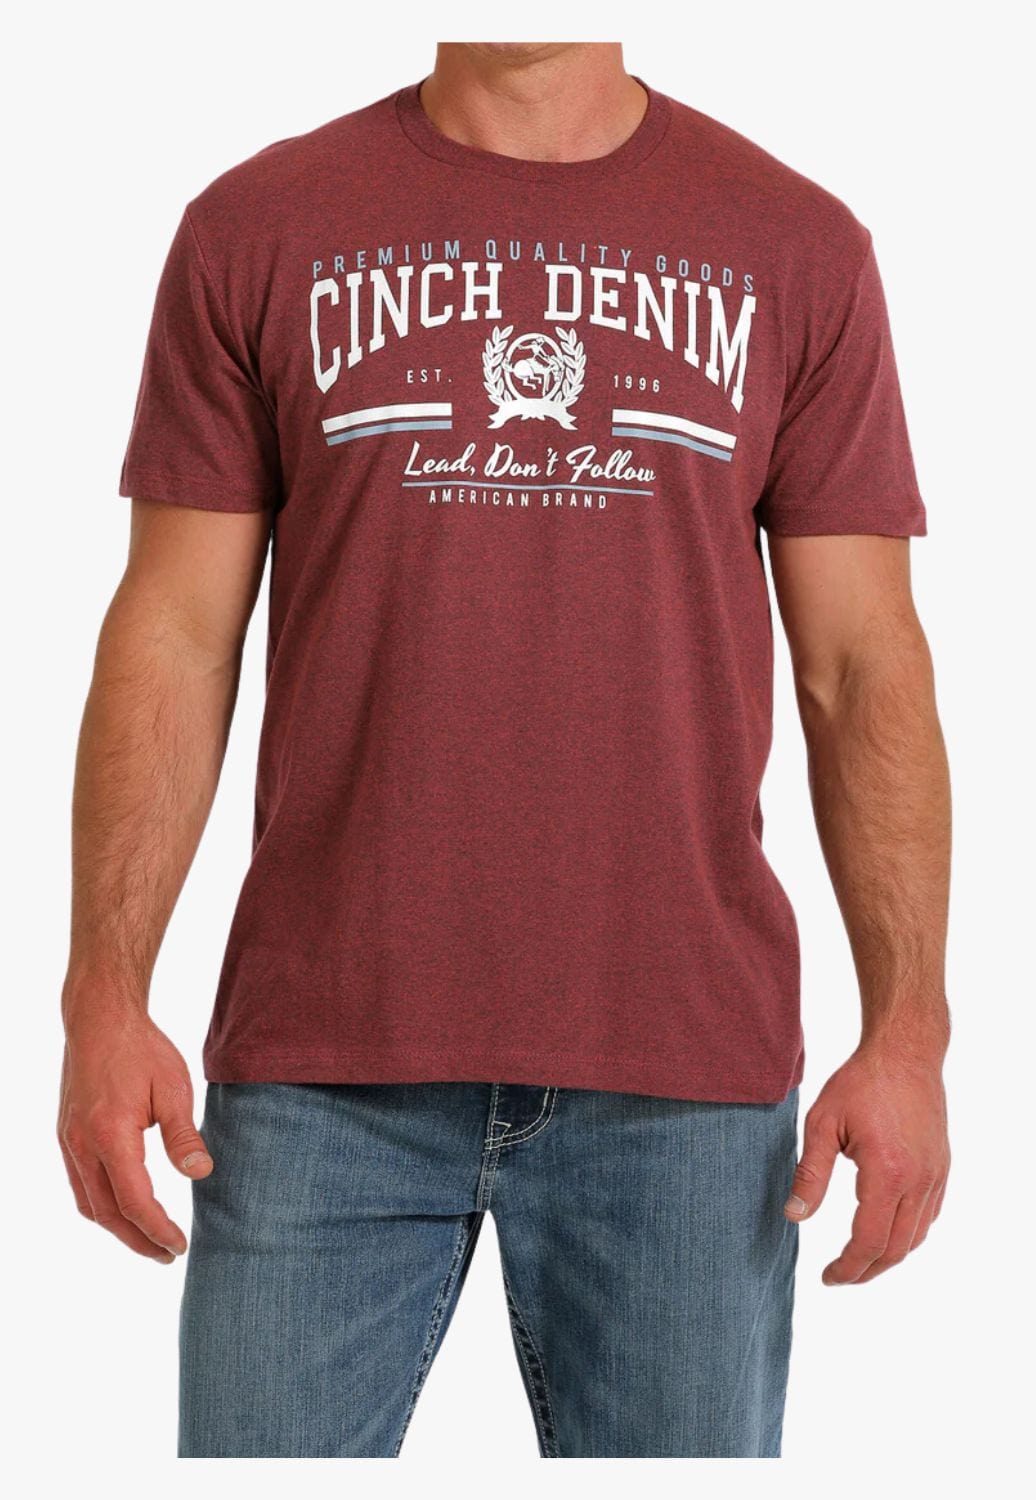 Cinch CLOTHING-MensT-Shirts Cinch Mens Cinch Denim T-Shirt